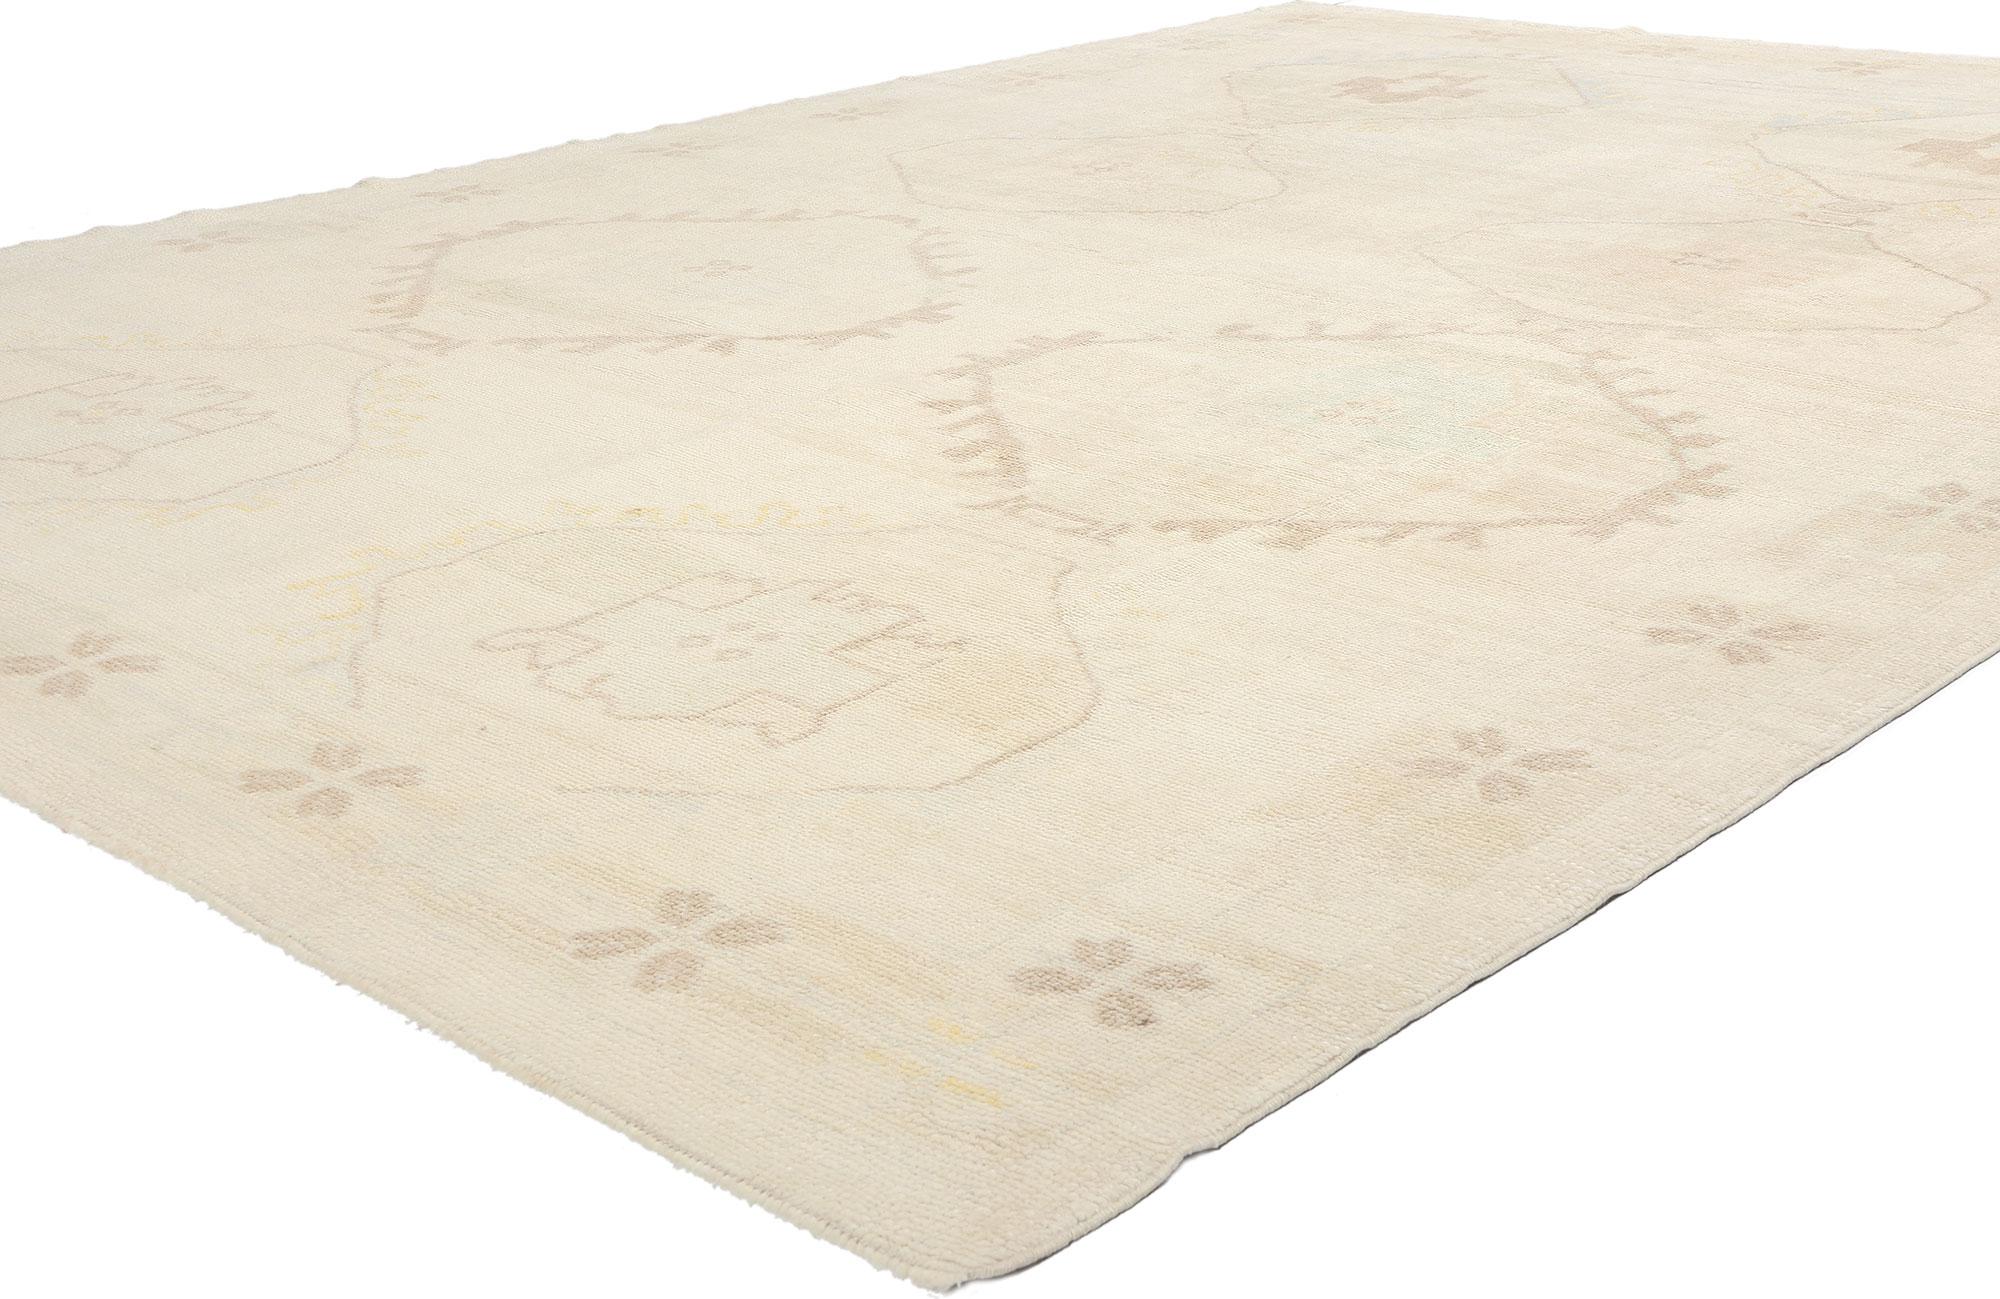 53883 Vintage Türkisch Kars Teppich, 08'11 x 12'08. Kars-Teppiche, die aus der nordosttürkischen Stadt Kars stammen, sind eine besondere Form von handgewebten Teppichen. Diese Teppiche werden von erfahrenen Kunsthandwerkern mit jahrhundertealten